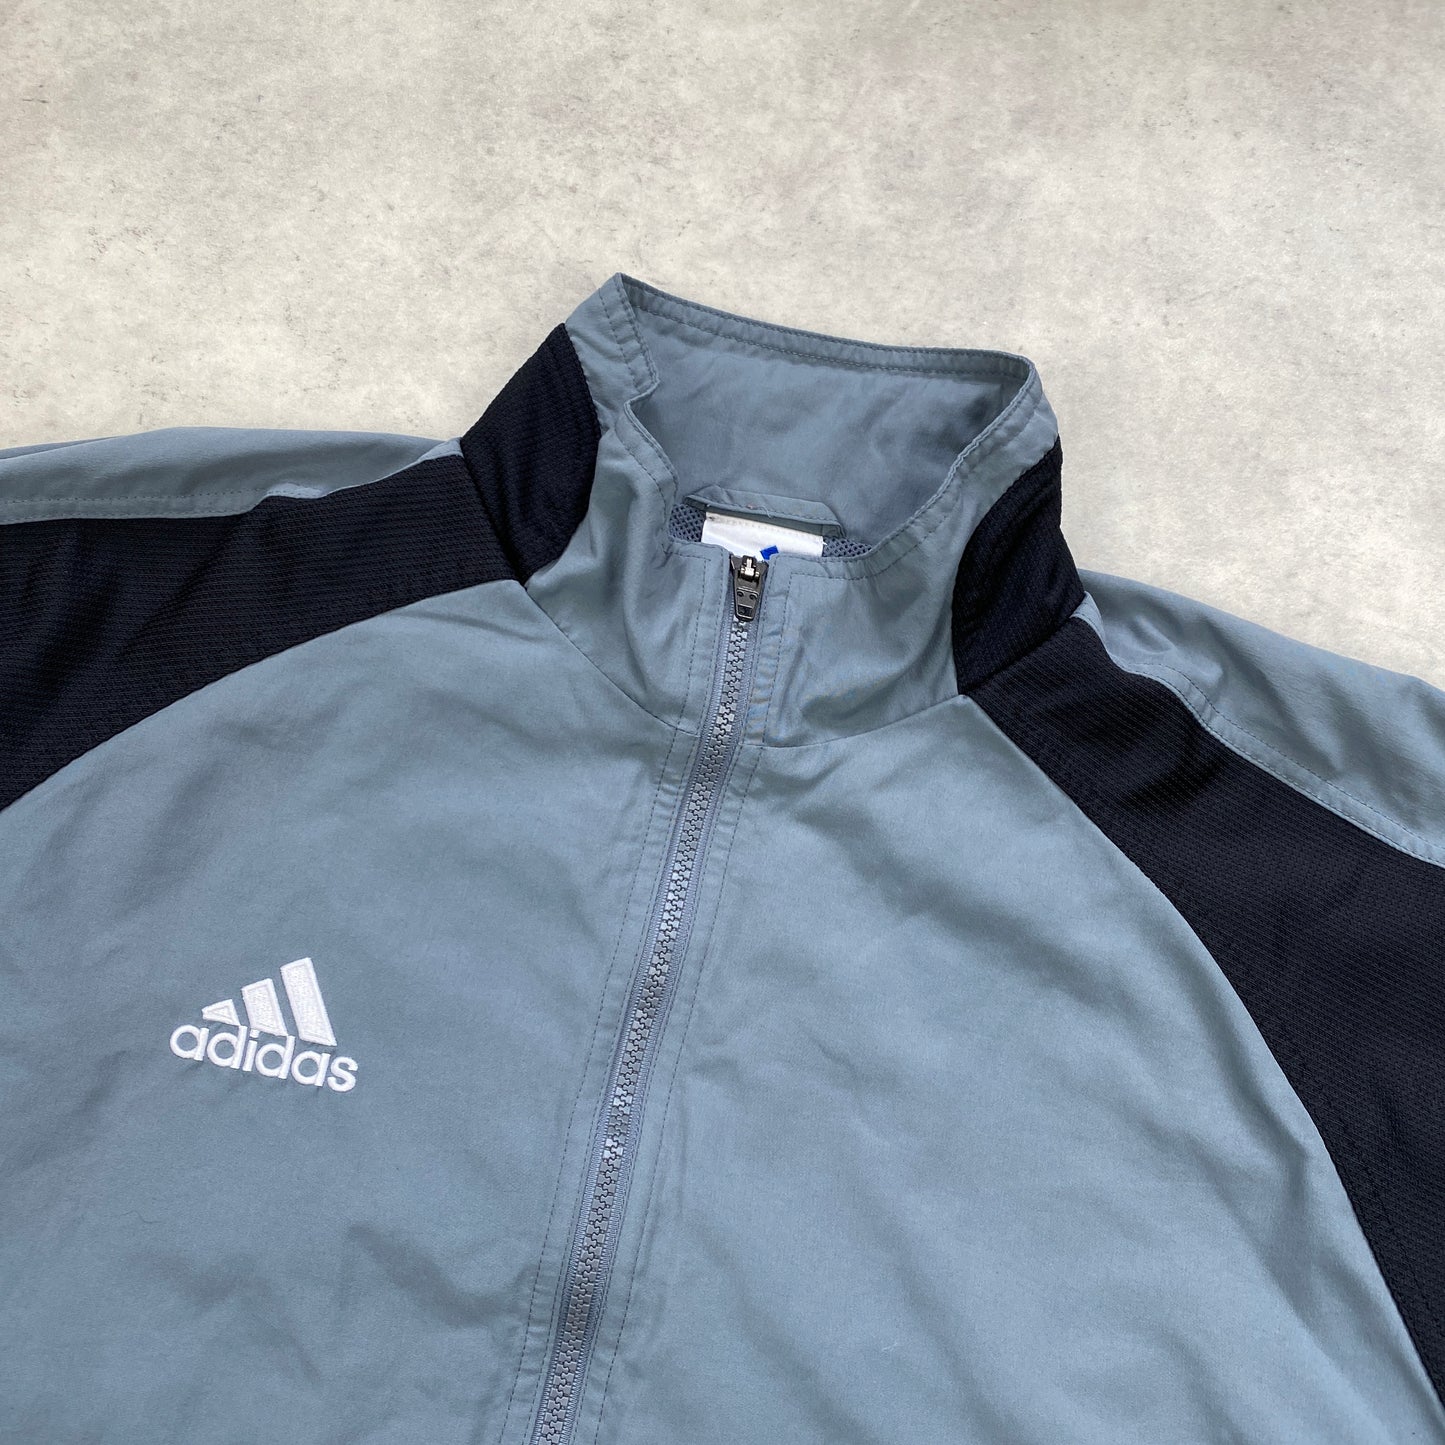 Adidas RARE Sparkasse track jacket (M)